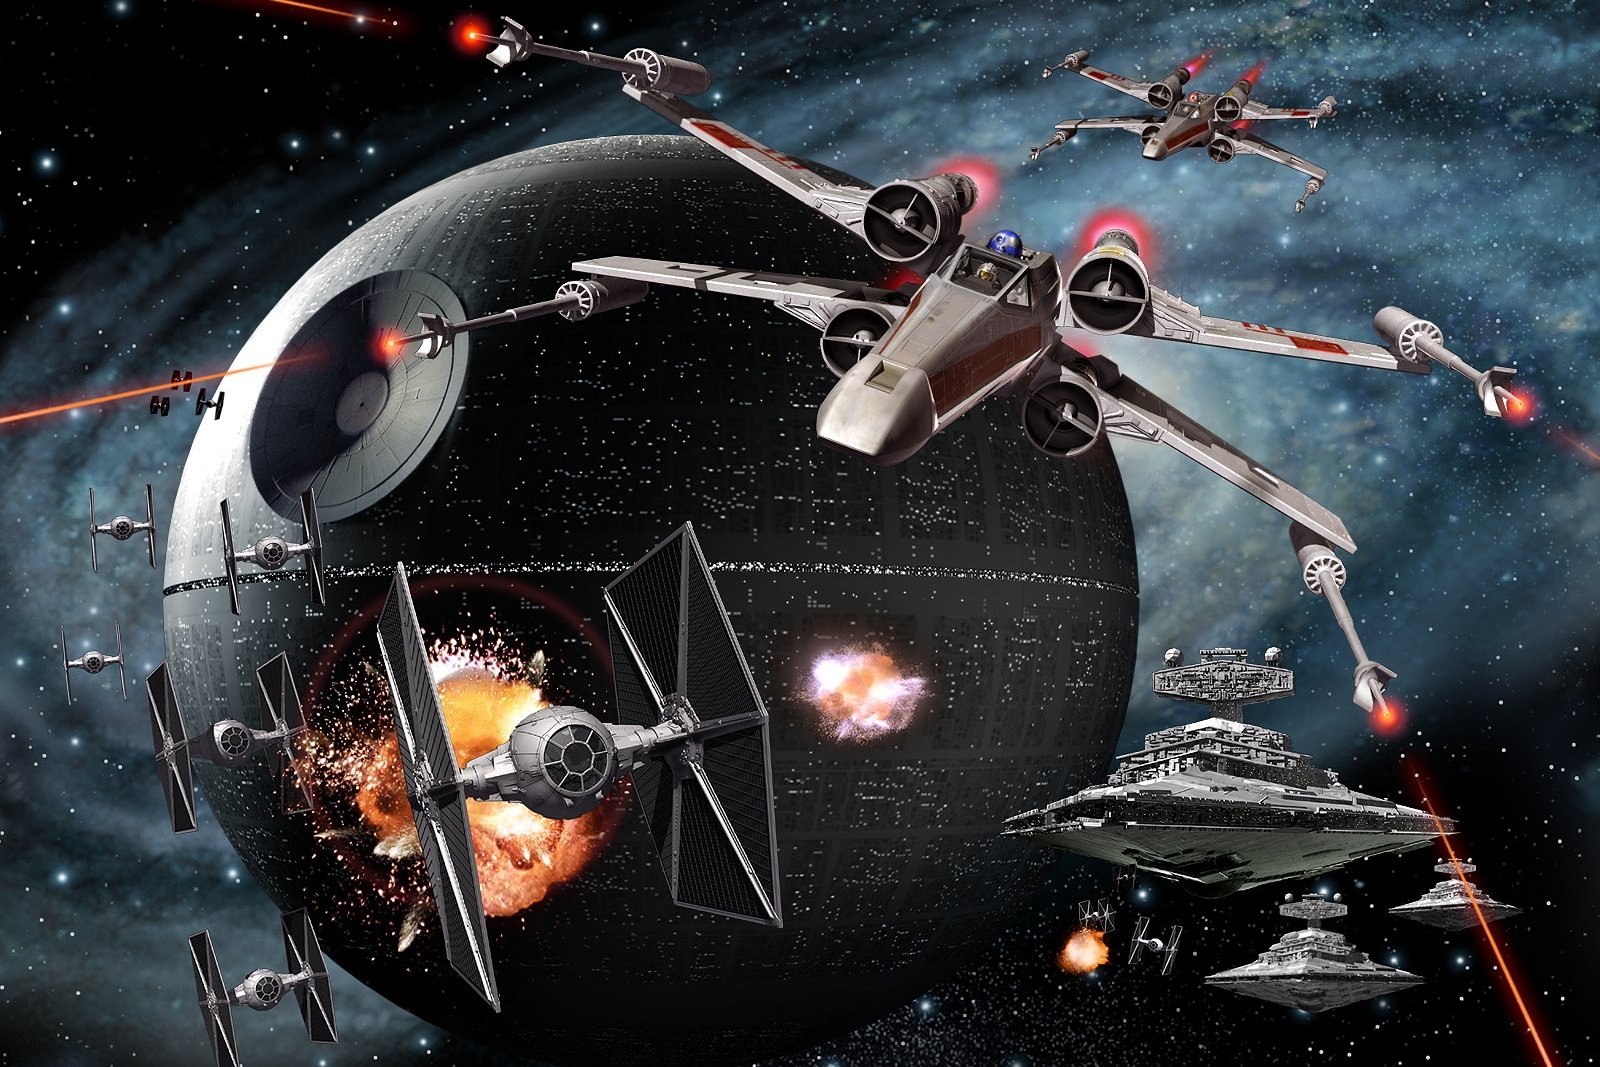 7 curiosidades do Universo Expandido de Star Wars que você precisa saber -  TecMundo